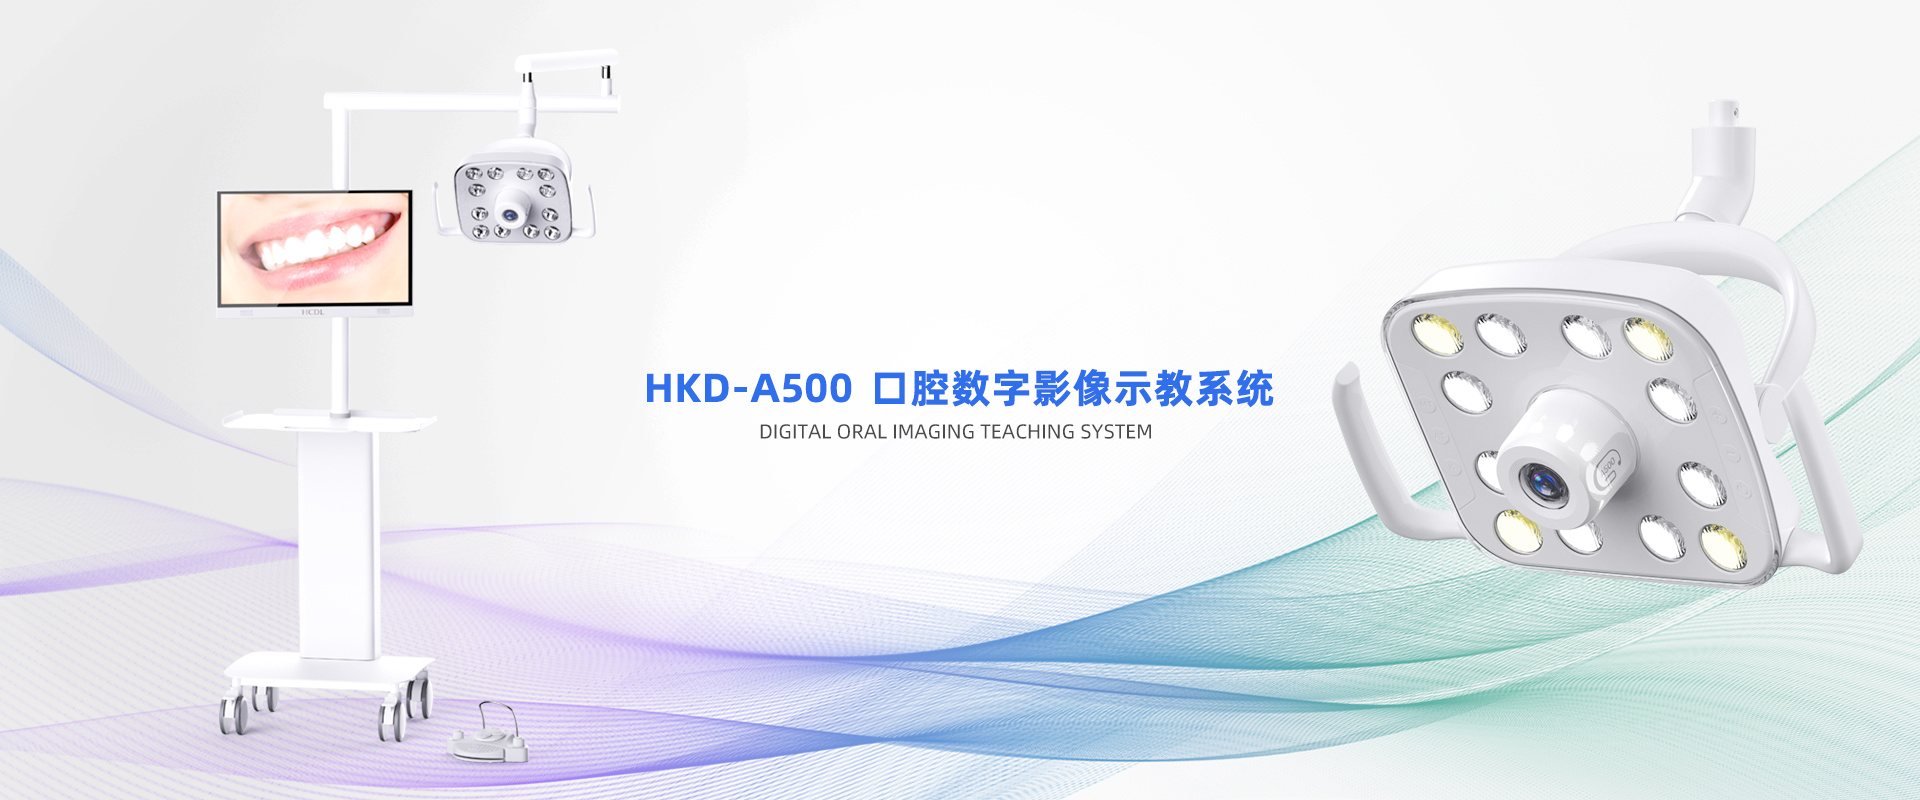 HKD-A500